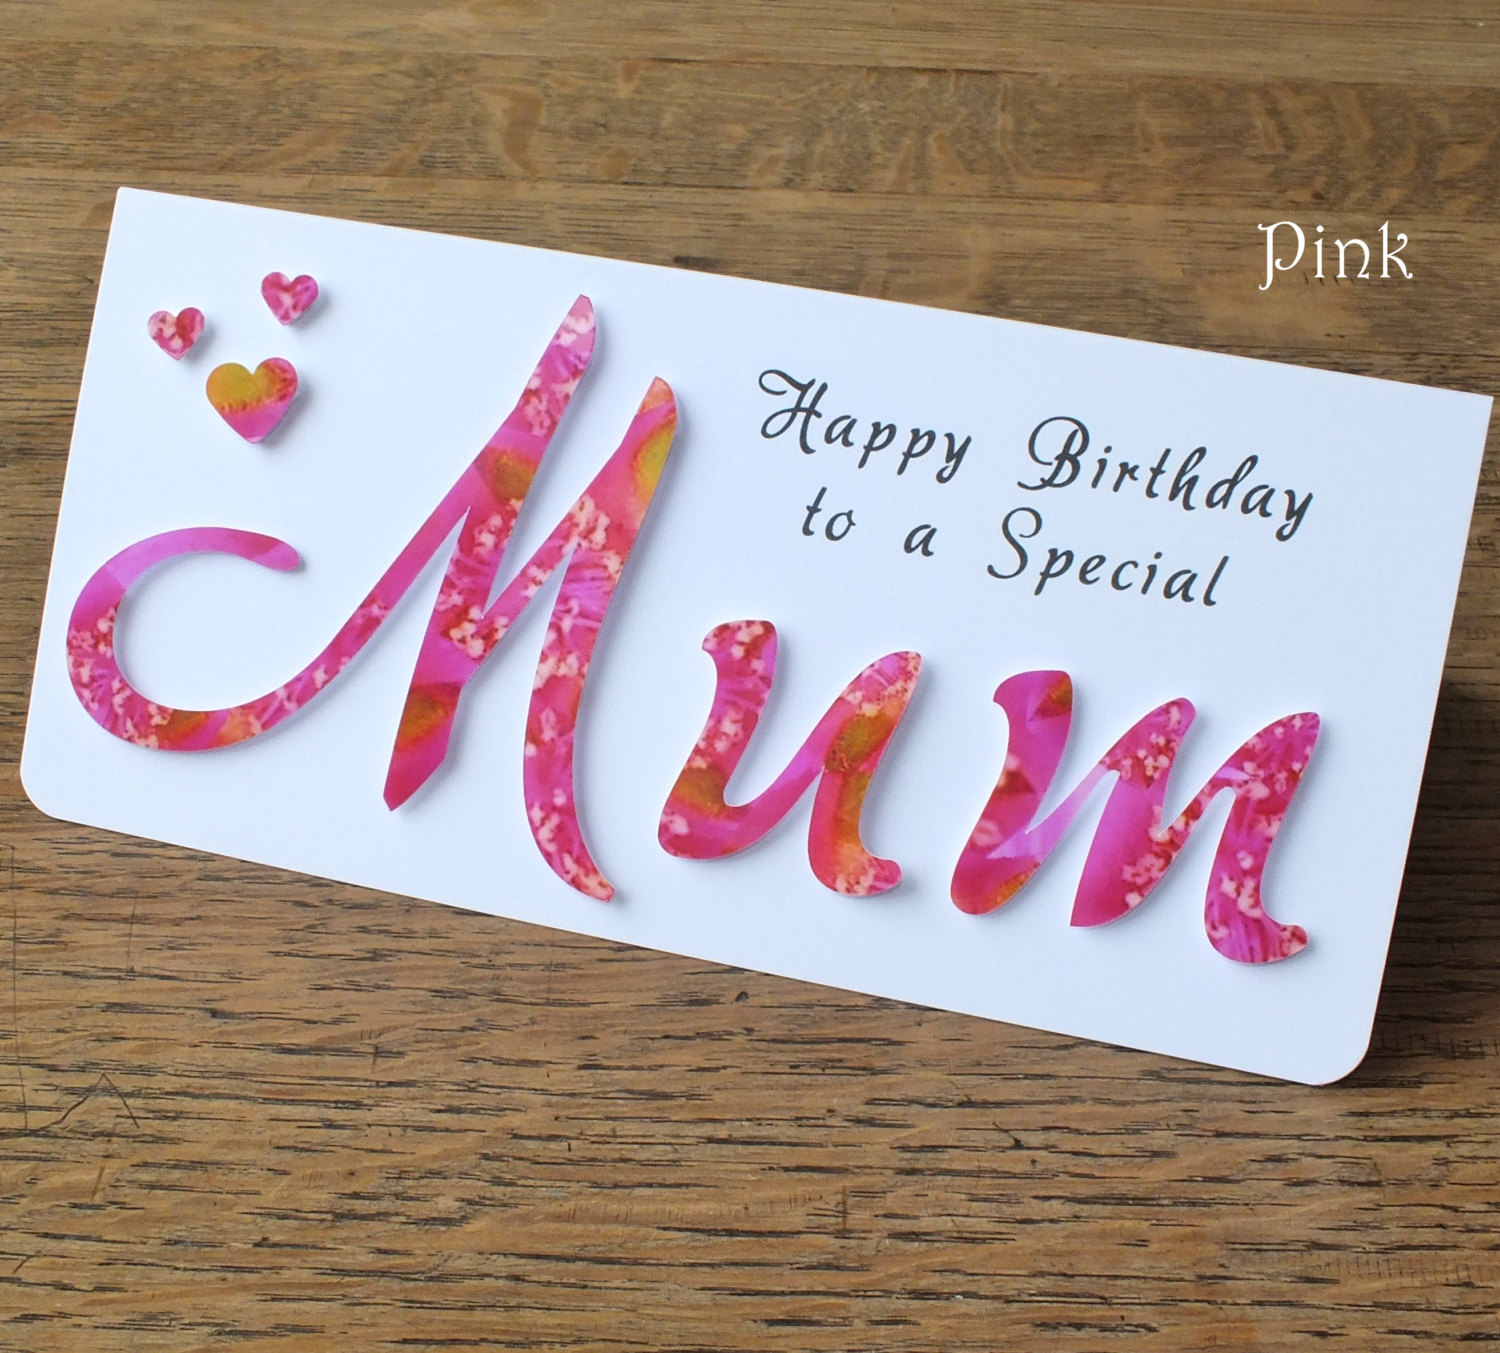 Handmade Birthday Card Ideas For Mom 98 Ideas For Moms Birthday Card Lovely Birthday Cards For Moms Or